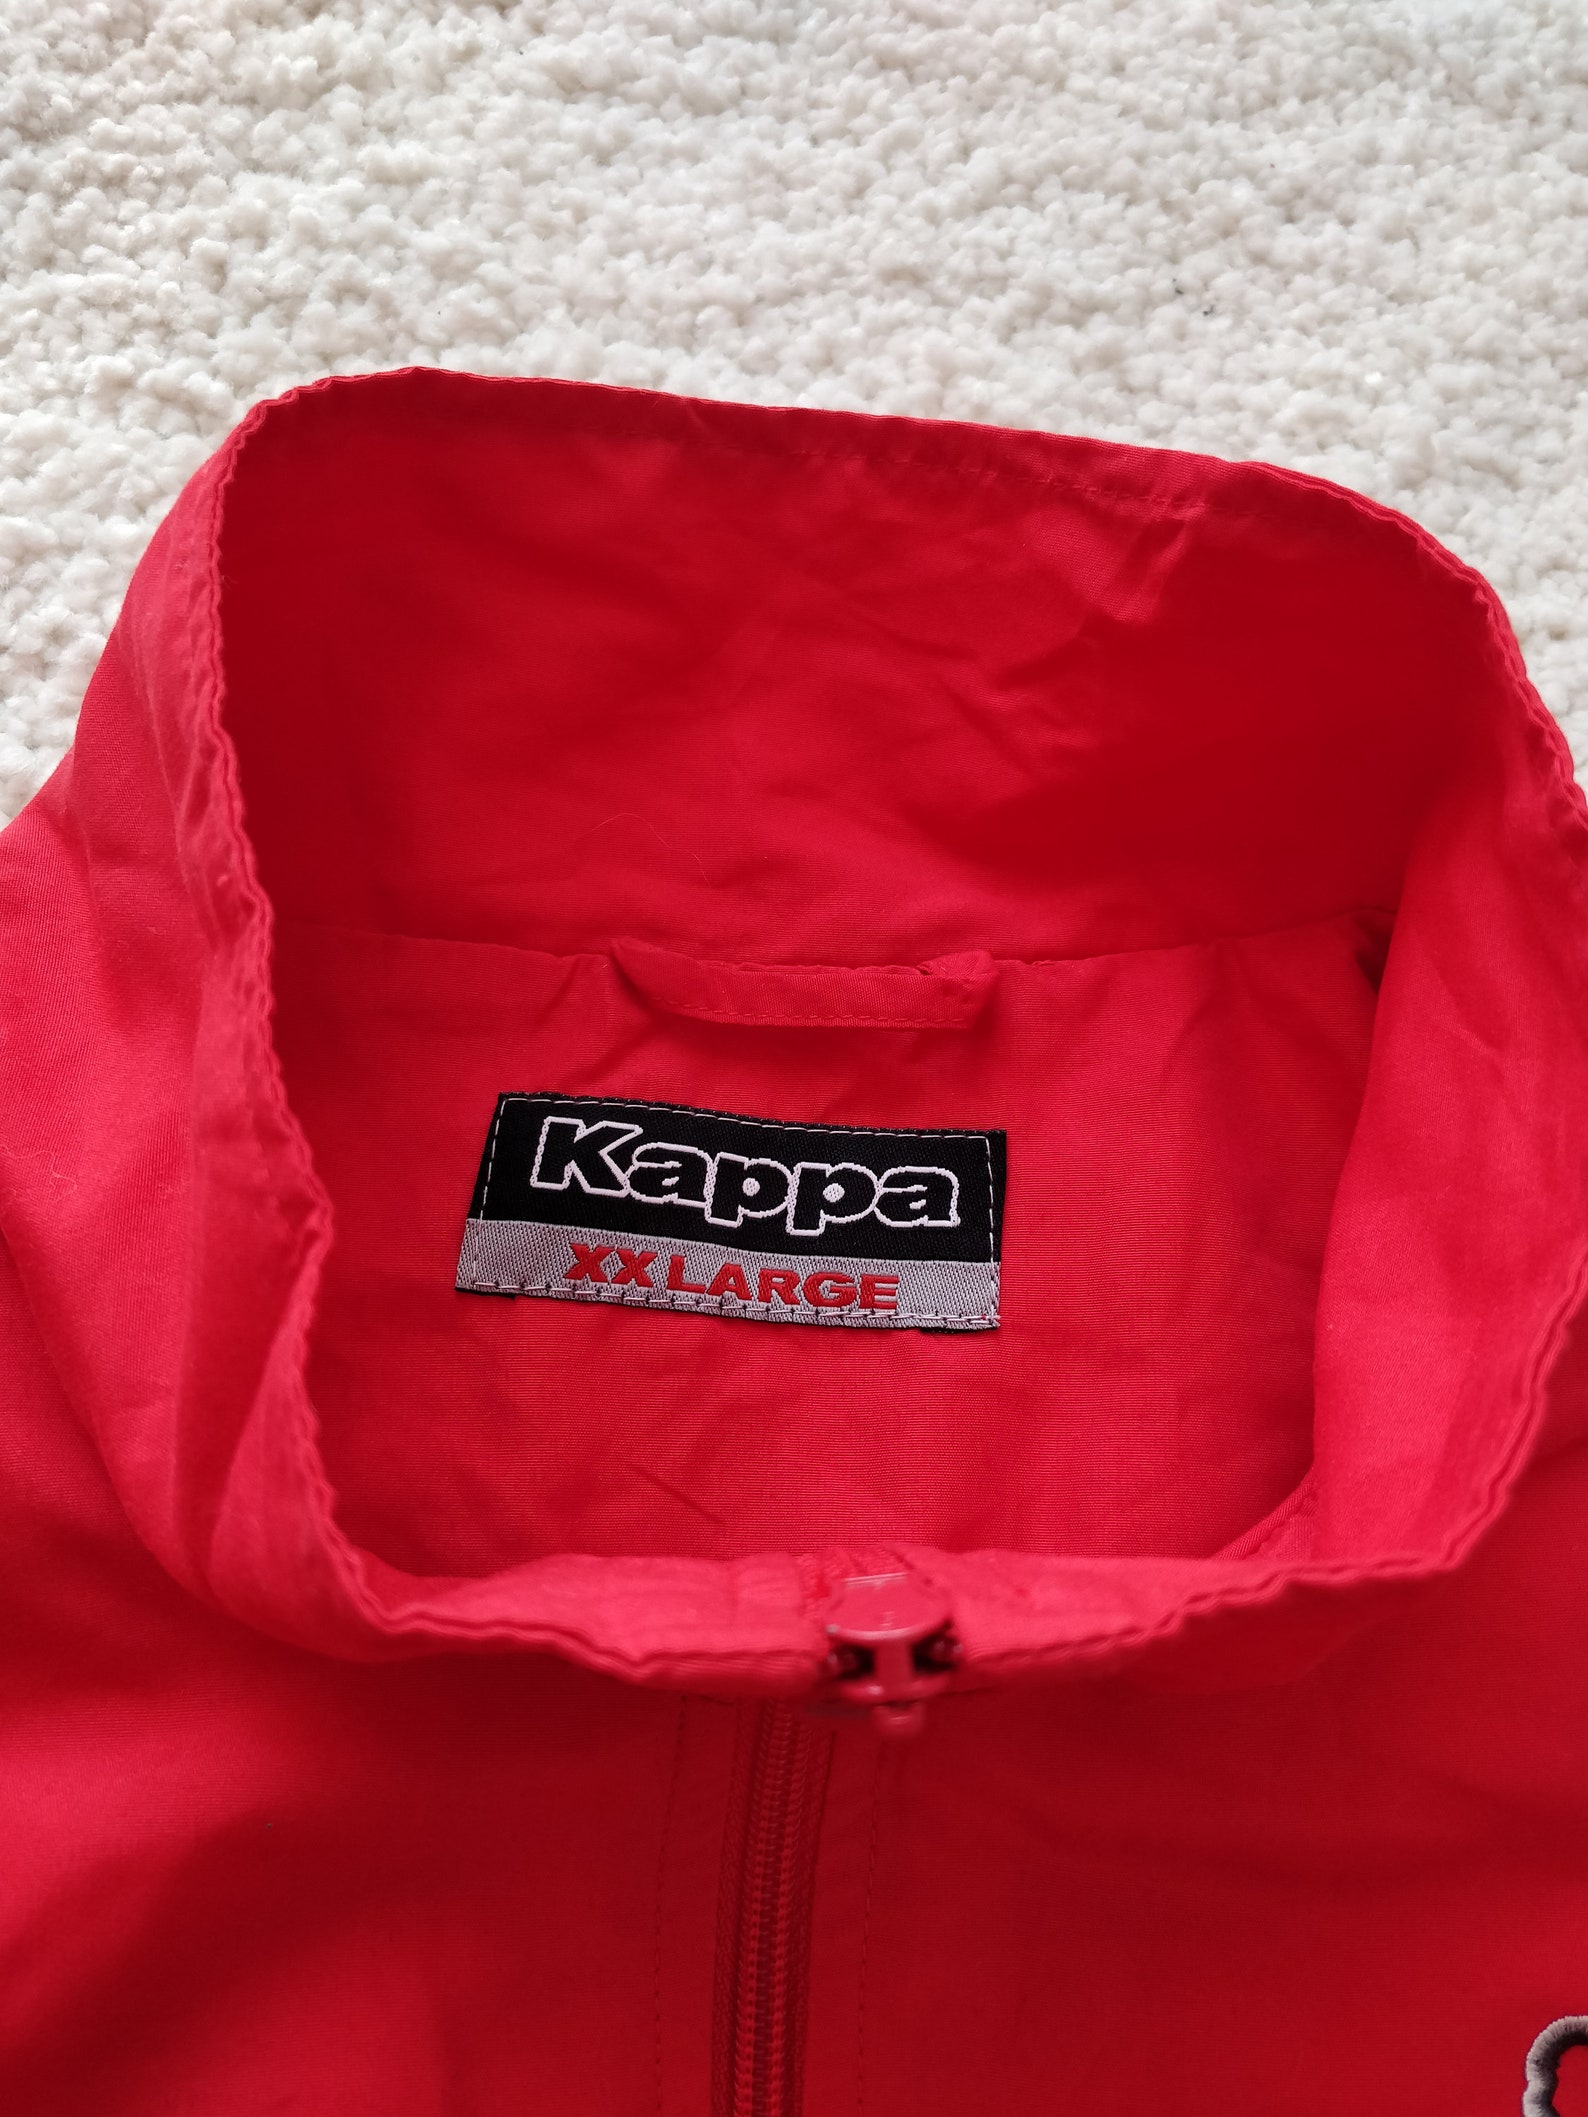 Kappa Vintage Mens Tracksuit Top Jacket Red Sweatshirt | Etsy